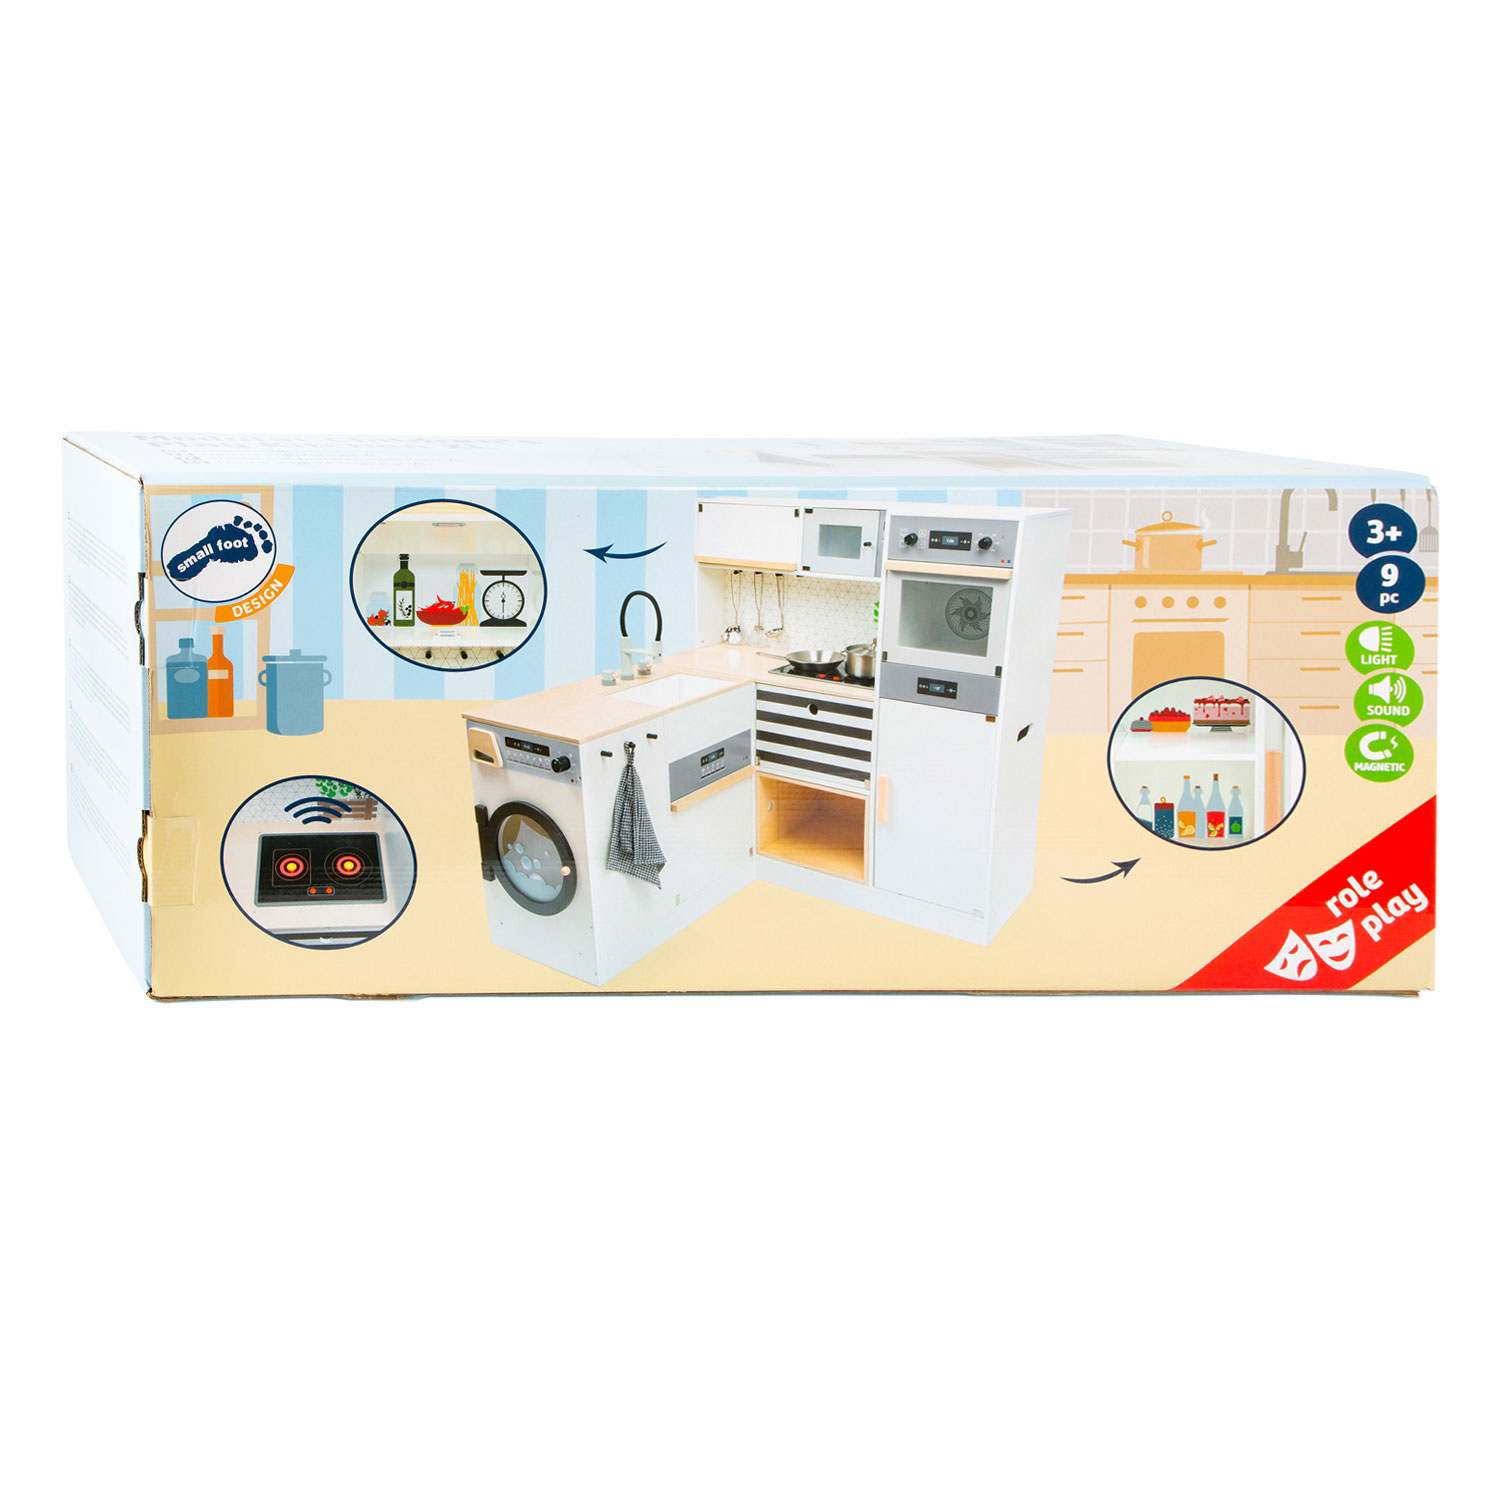 Small Foot - Modulare Spielküche aus Holz XL Weiß, 9dlg.